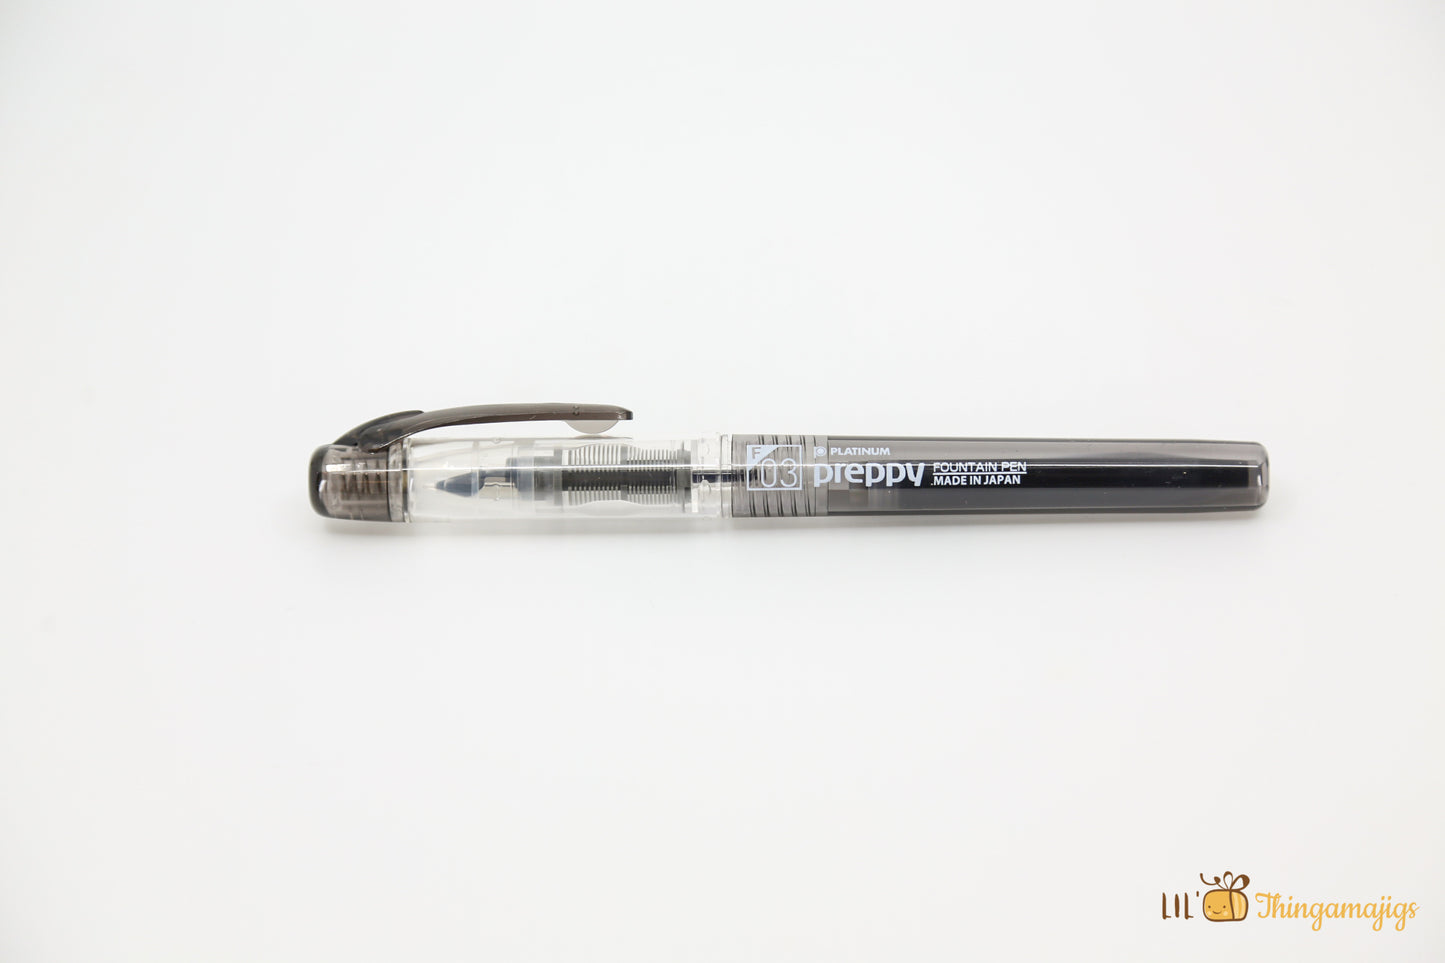 Platinum Preppy Fountain Pen - 0.3mm